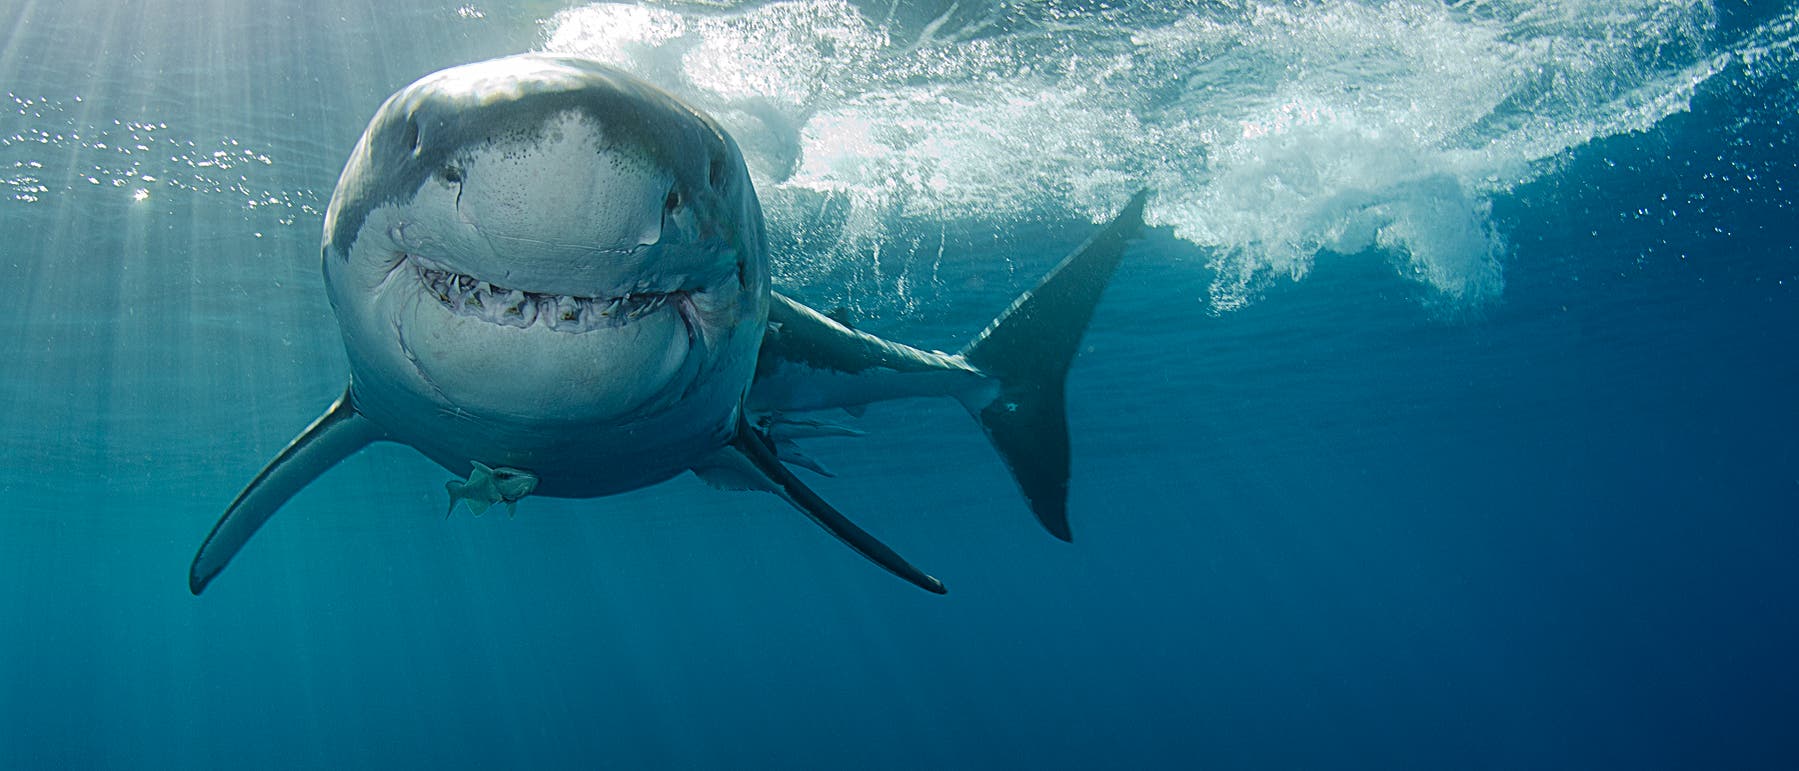 Weißer Hai - tausende Zähne im Lauf eines Lebens